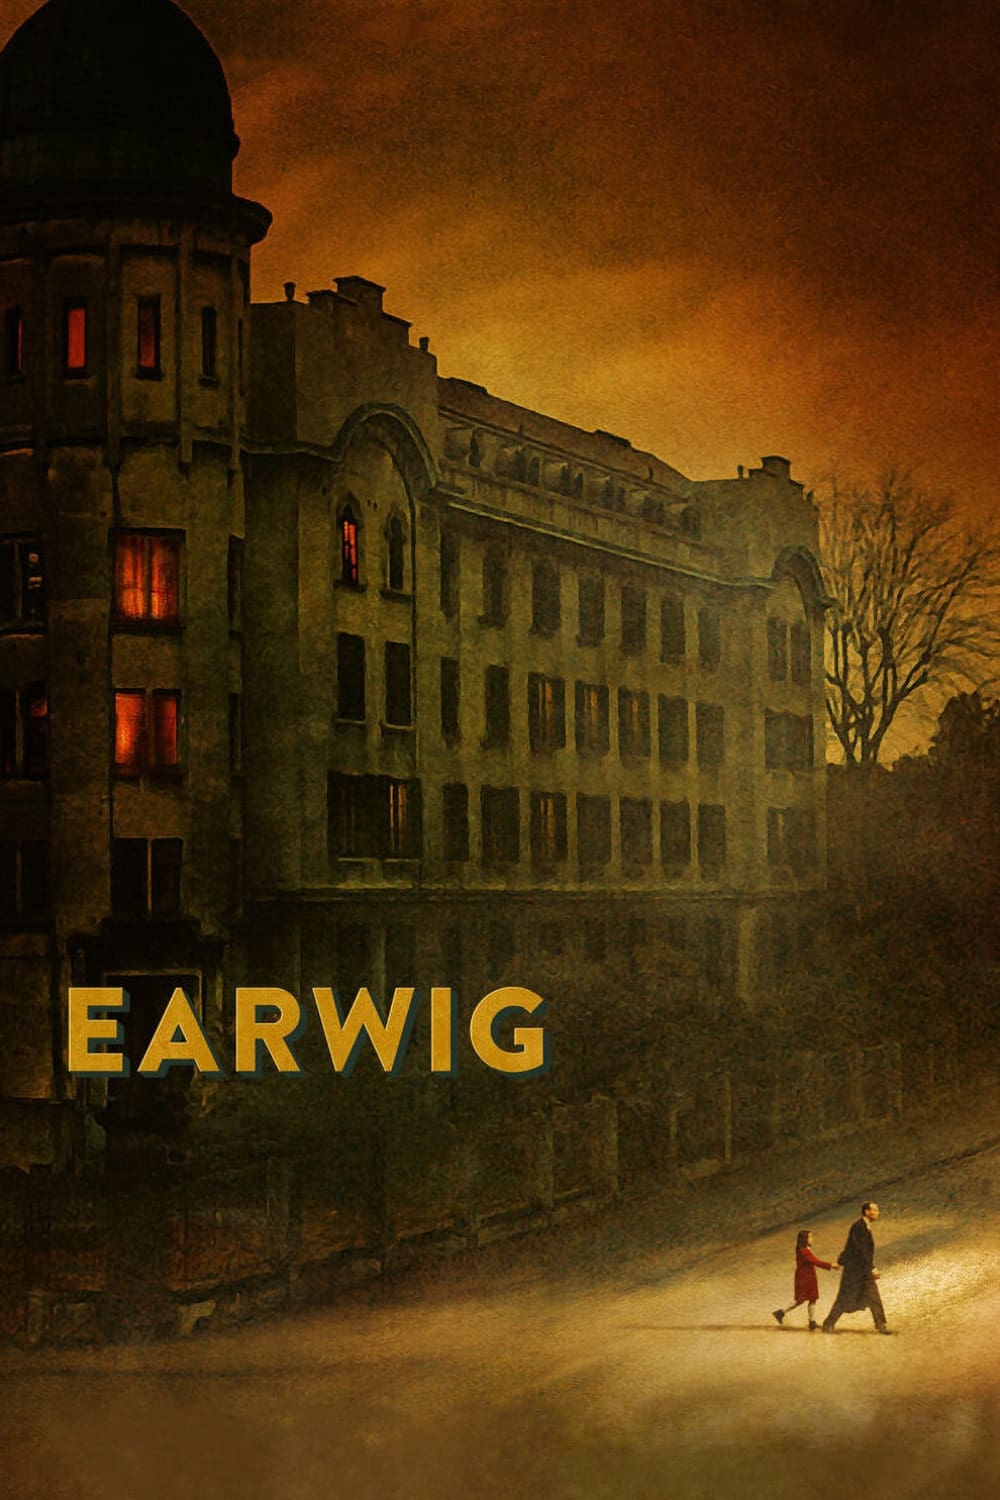 مشاهدة فيلم Earwig 2021 مترجم